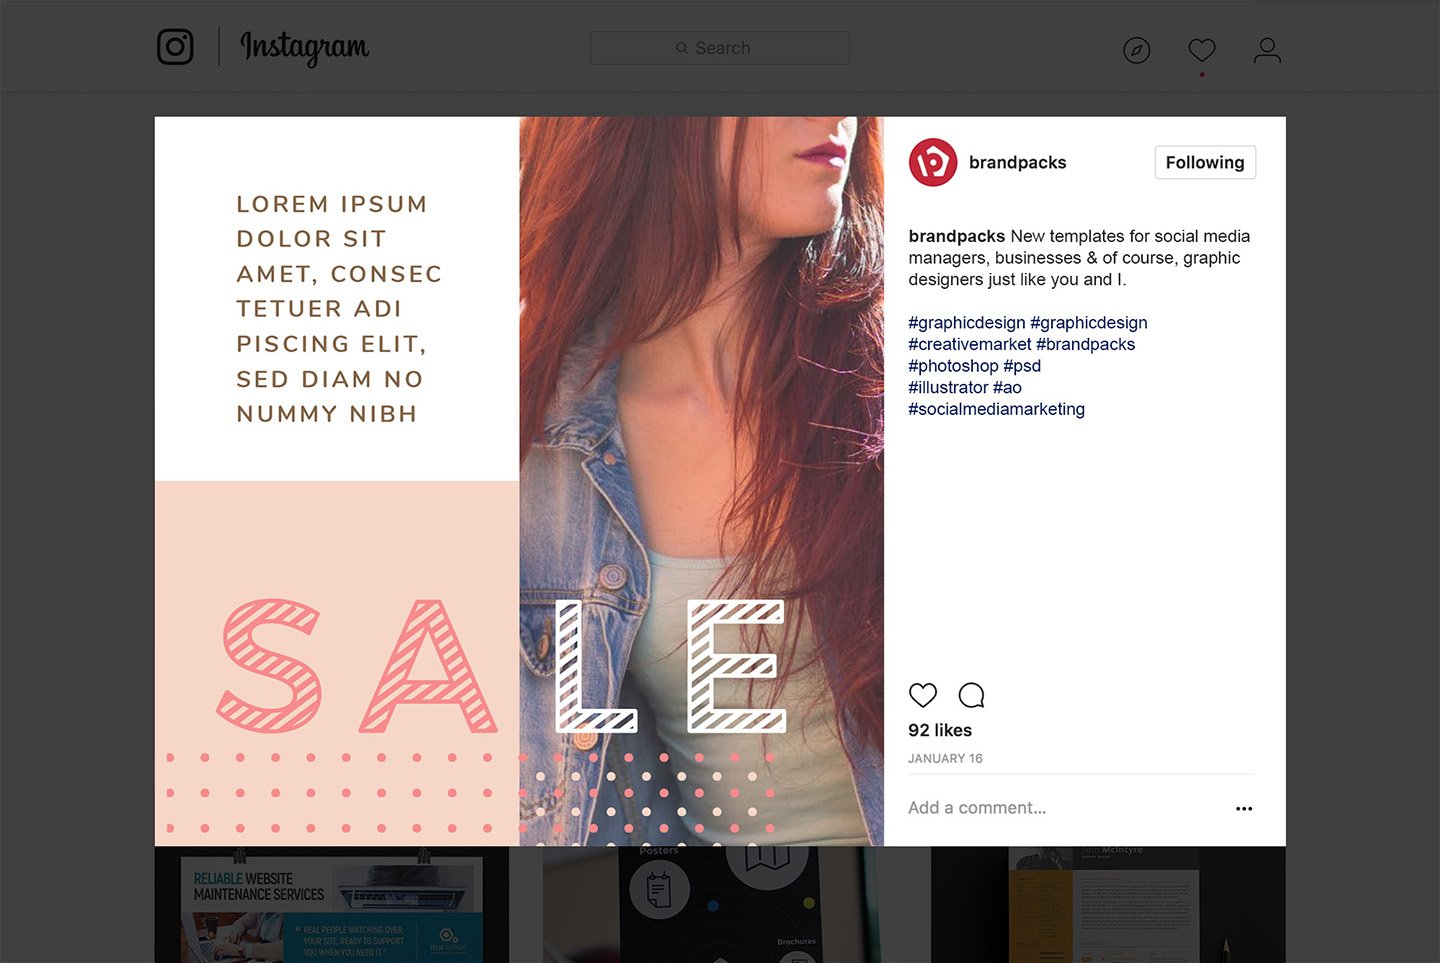 粉色系女性化妆品服装电商营销海报Instagram模板 Social Media Templates Pack Vol.5插图8